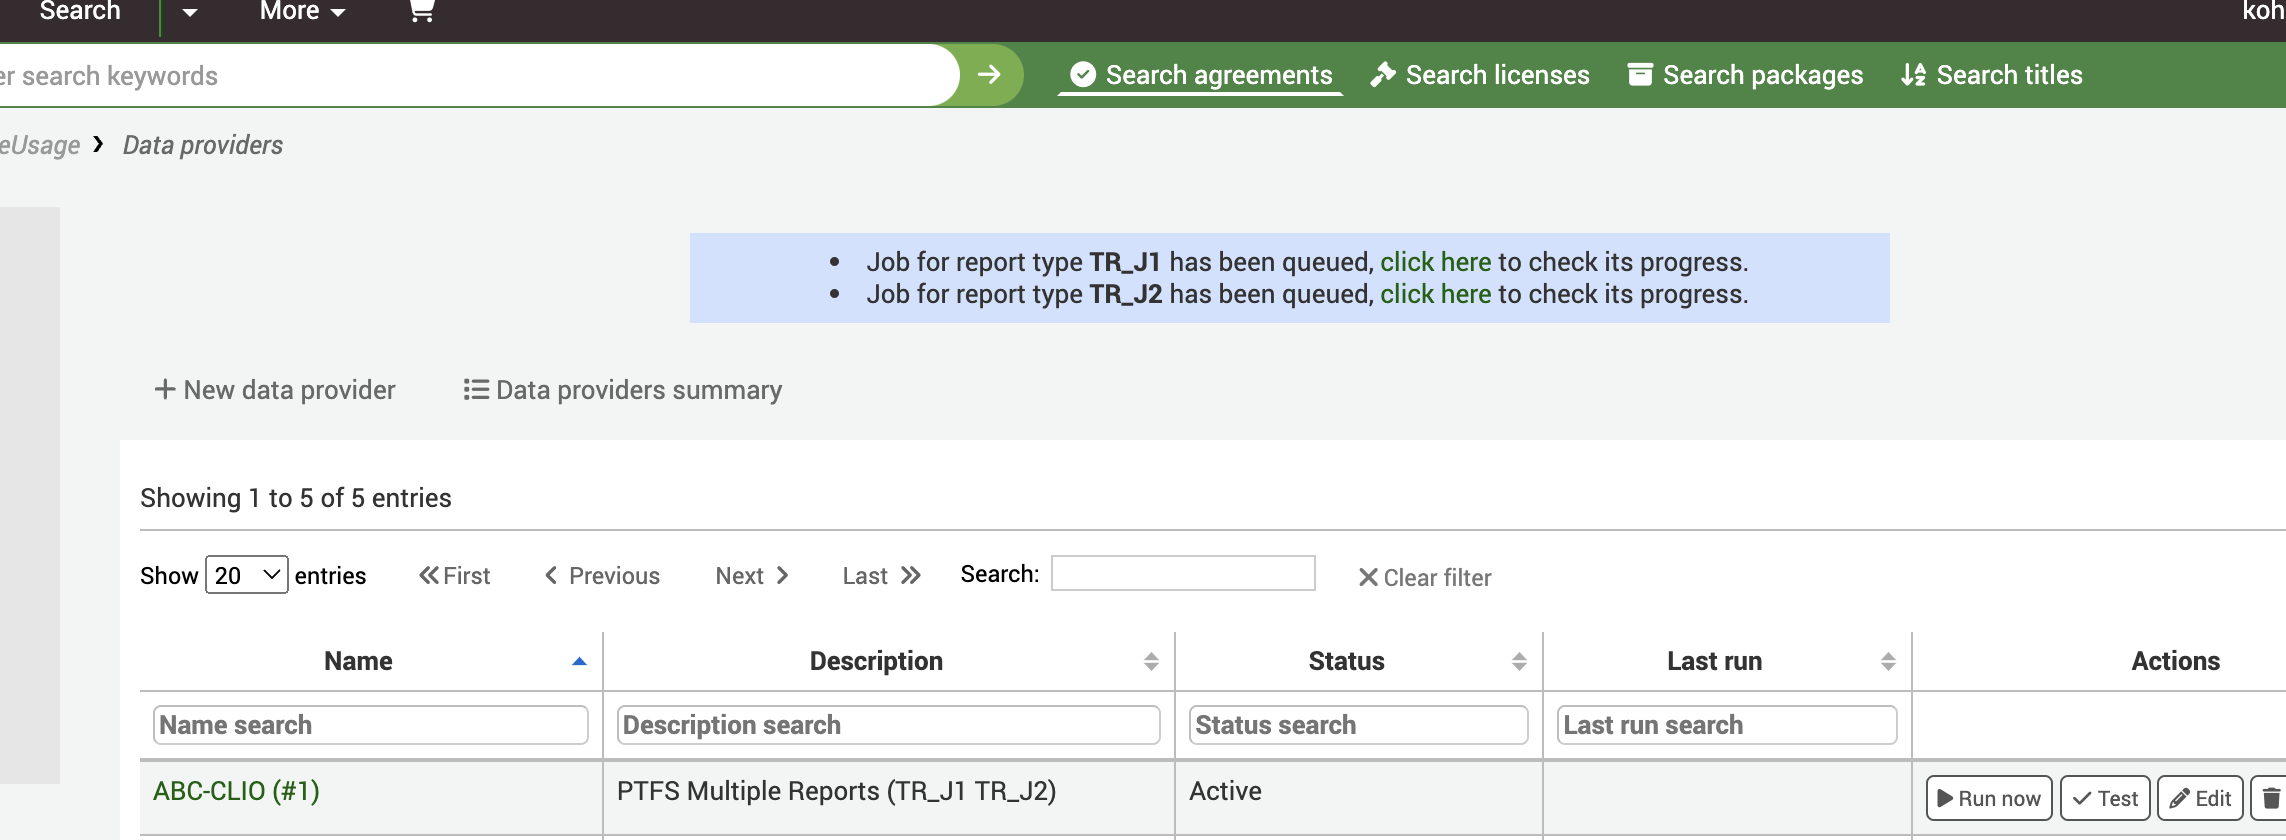 संदेश के साथ डेटा प्रदाताओं की स्क्रीन: रिपोर्ट के प्रकार के लिए 'Job TR_J1 Queued किया गया है, इसकी प्रगति की जांच के लिए यहां क्लिक करें।' और 'Job फॉर रिपोर्ट टाइप TR_J2 Queued किया गया है, इसकी प्रगति की जांच के लिए यहां क्लिक करें। '